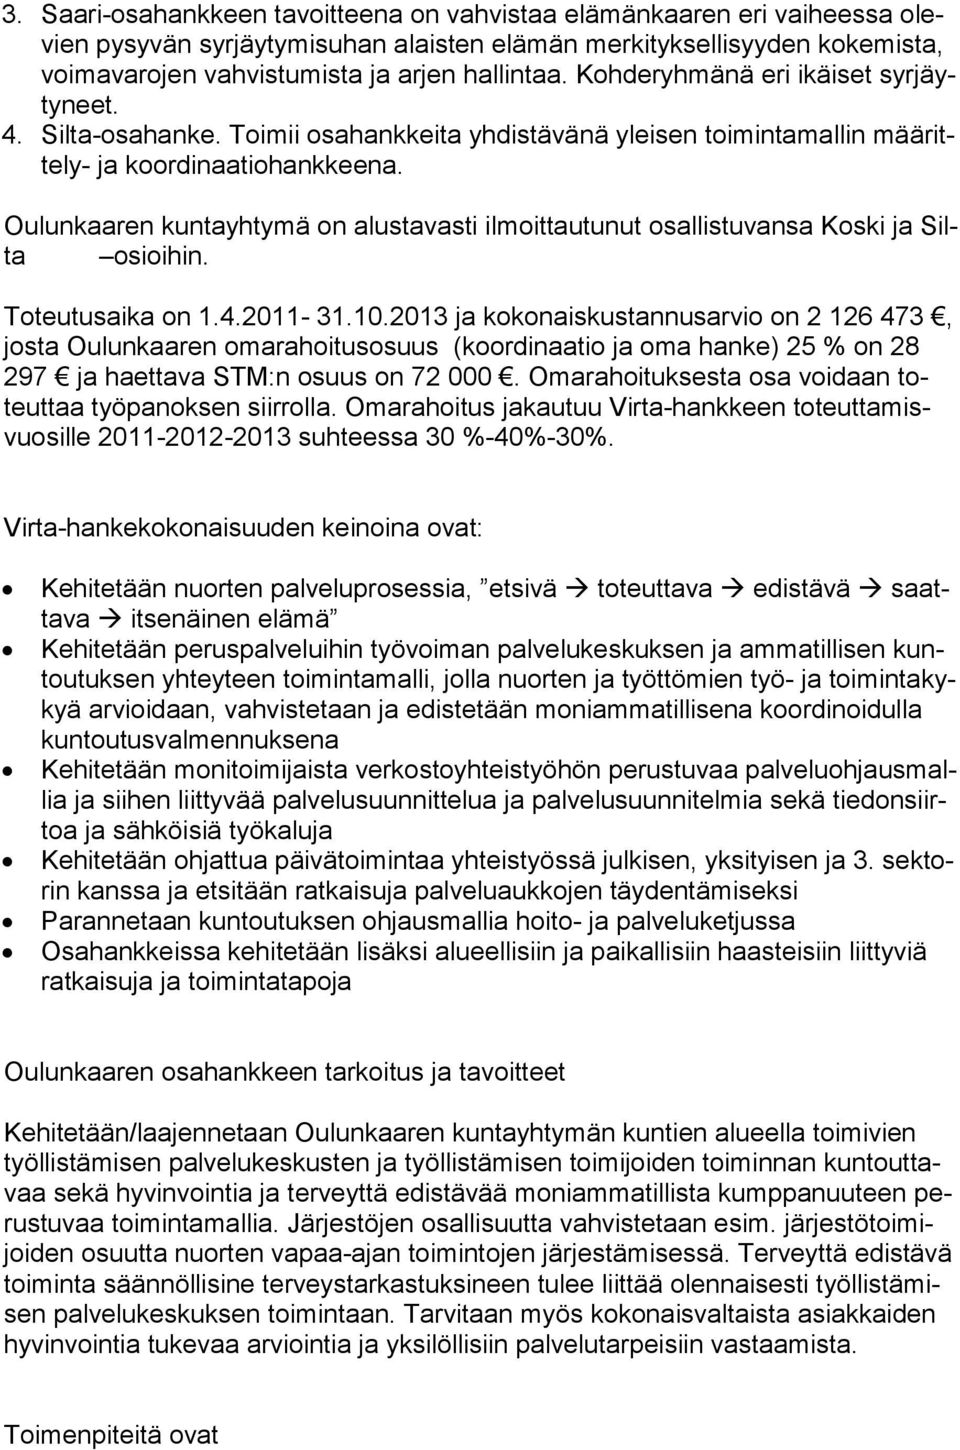 Oulunkaaren kuntayhtymä on alustavasti ilmoittautunut osallistuvansa Koski ja Silta osioihin. Toteutusaika on 1.4.2011-31.10.